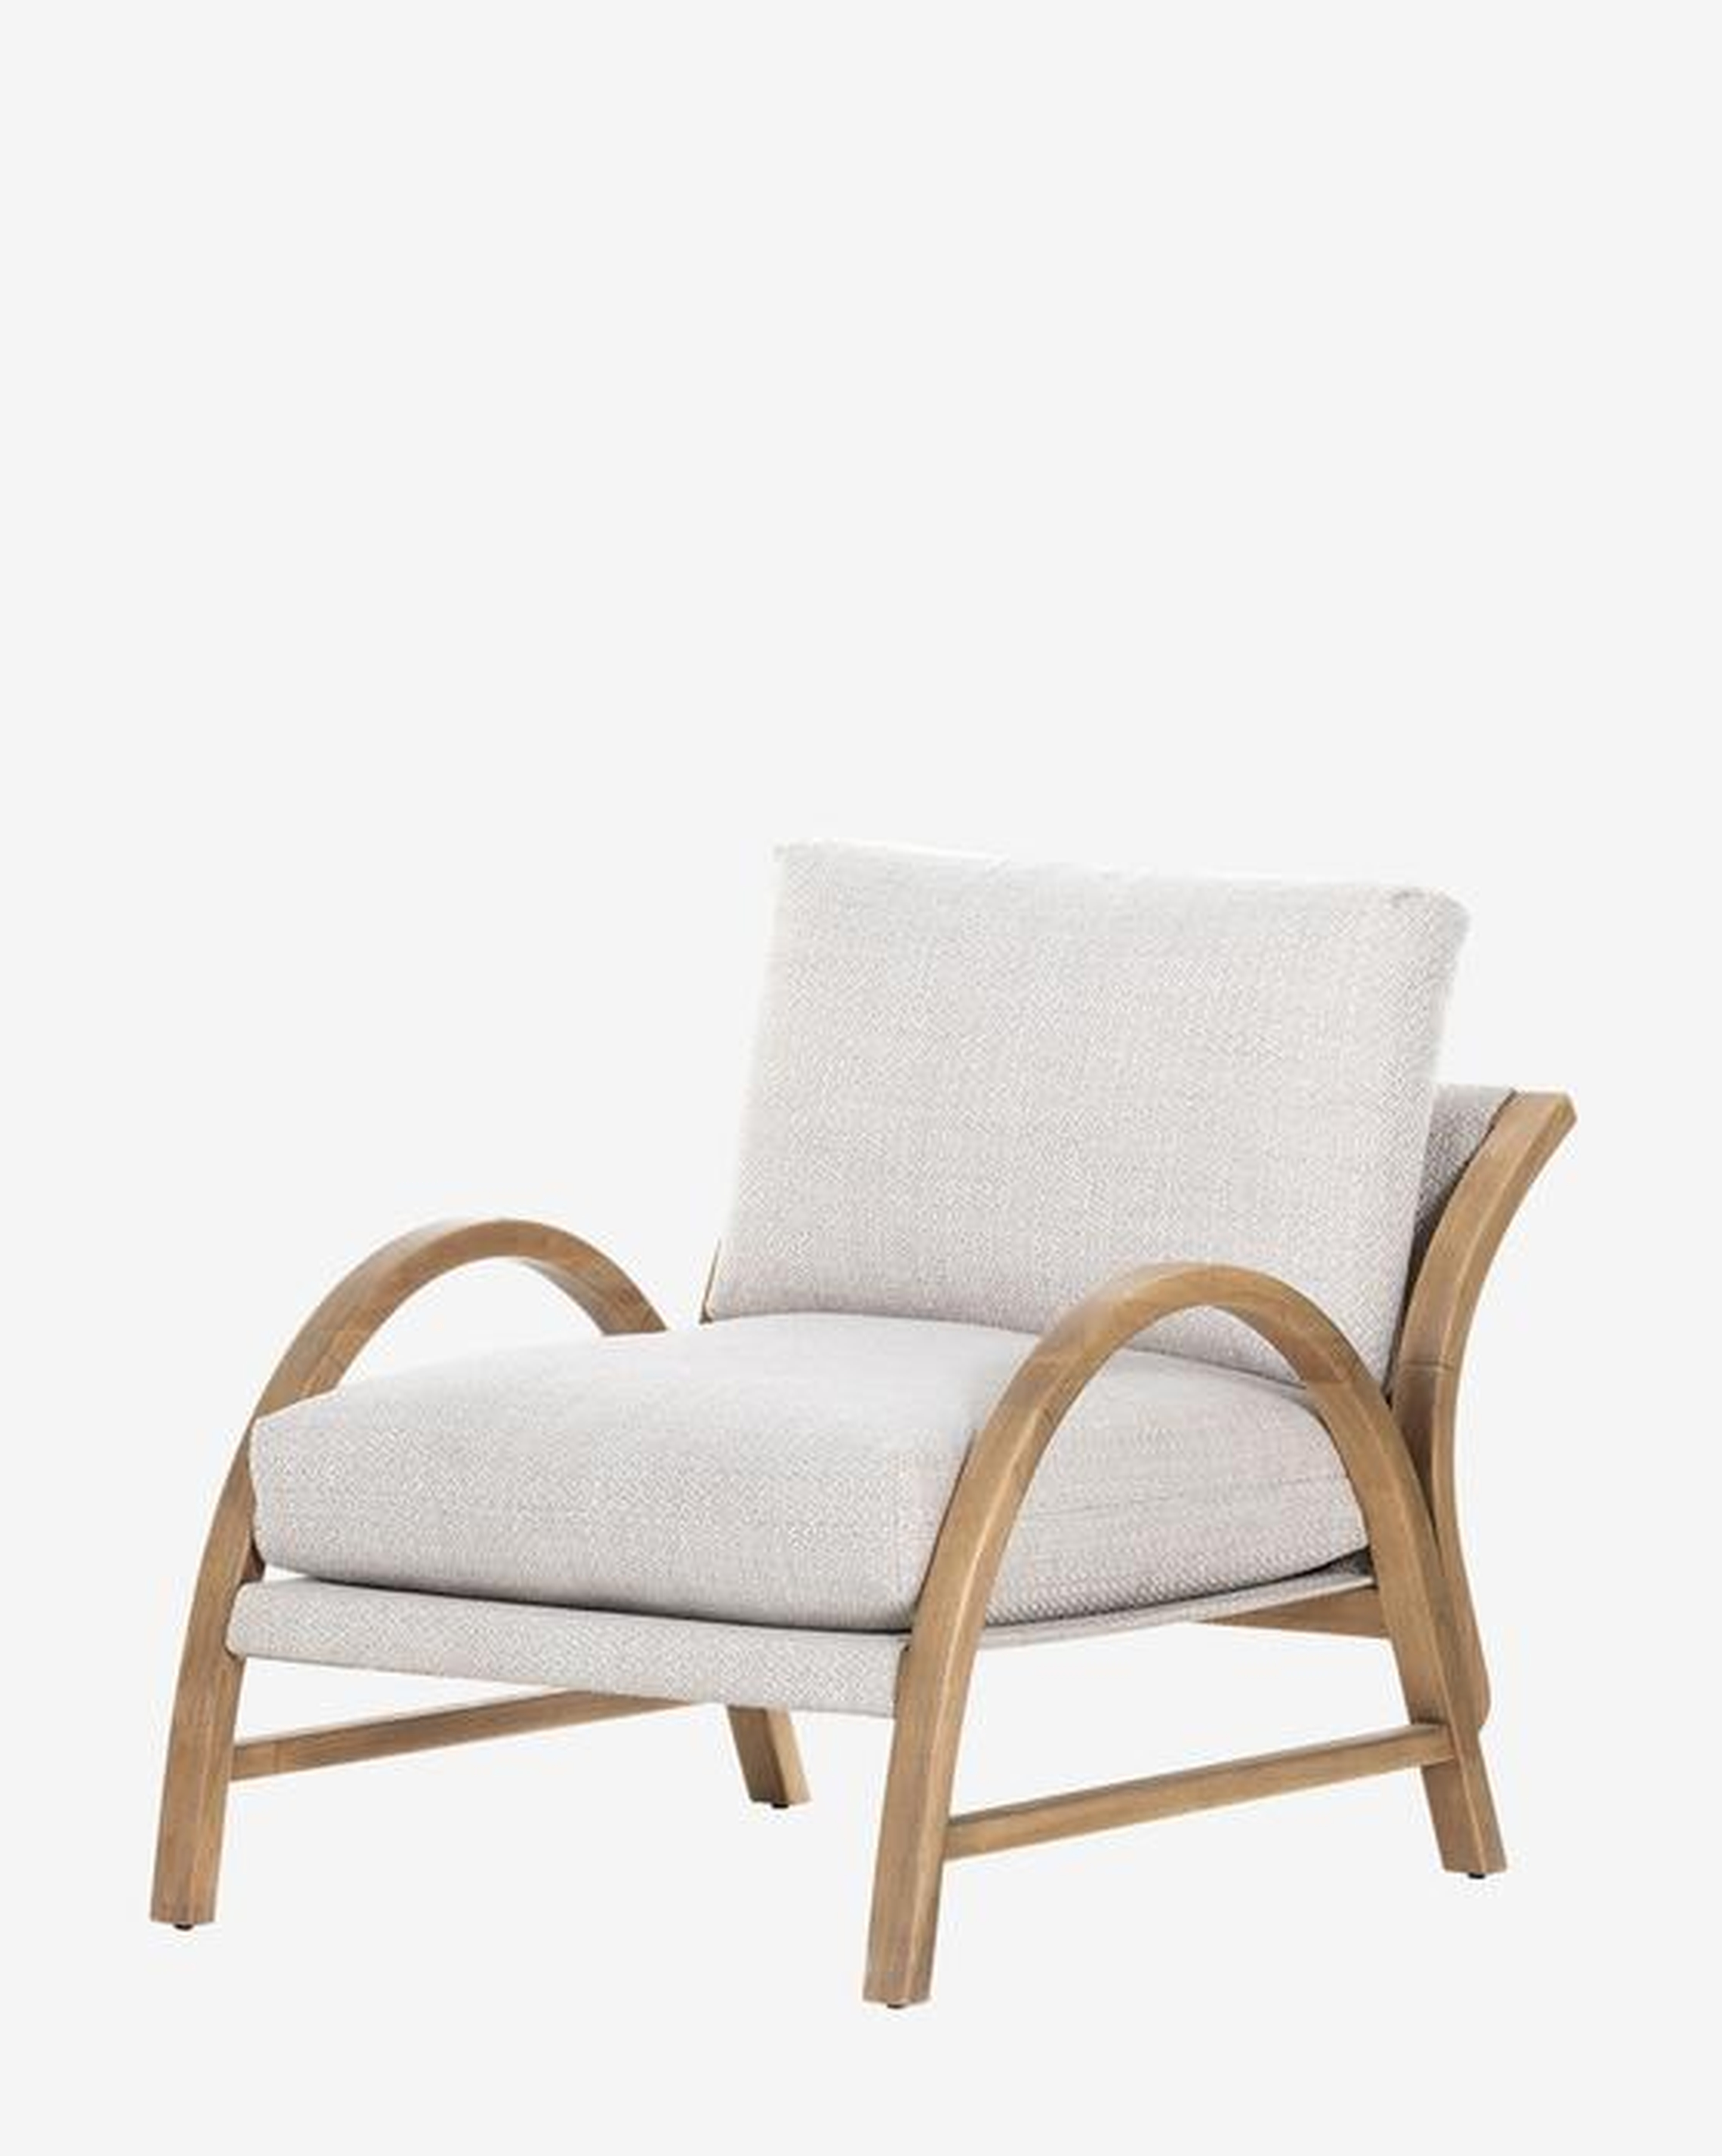 Estrada Chair - McGee & Co.